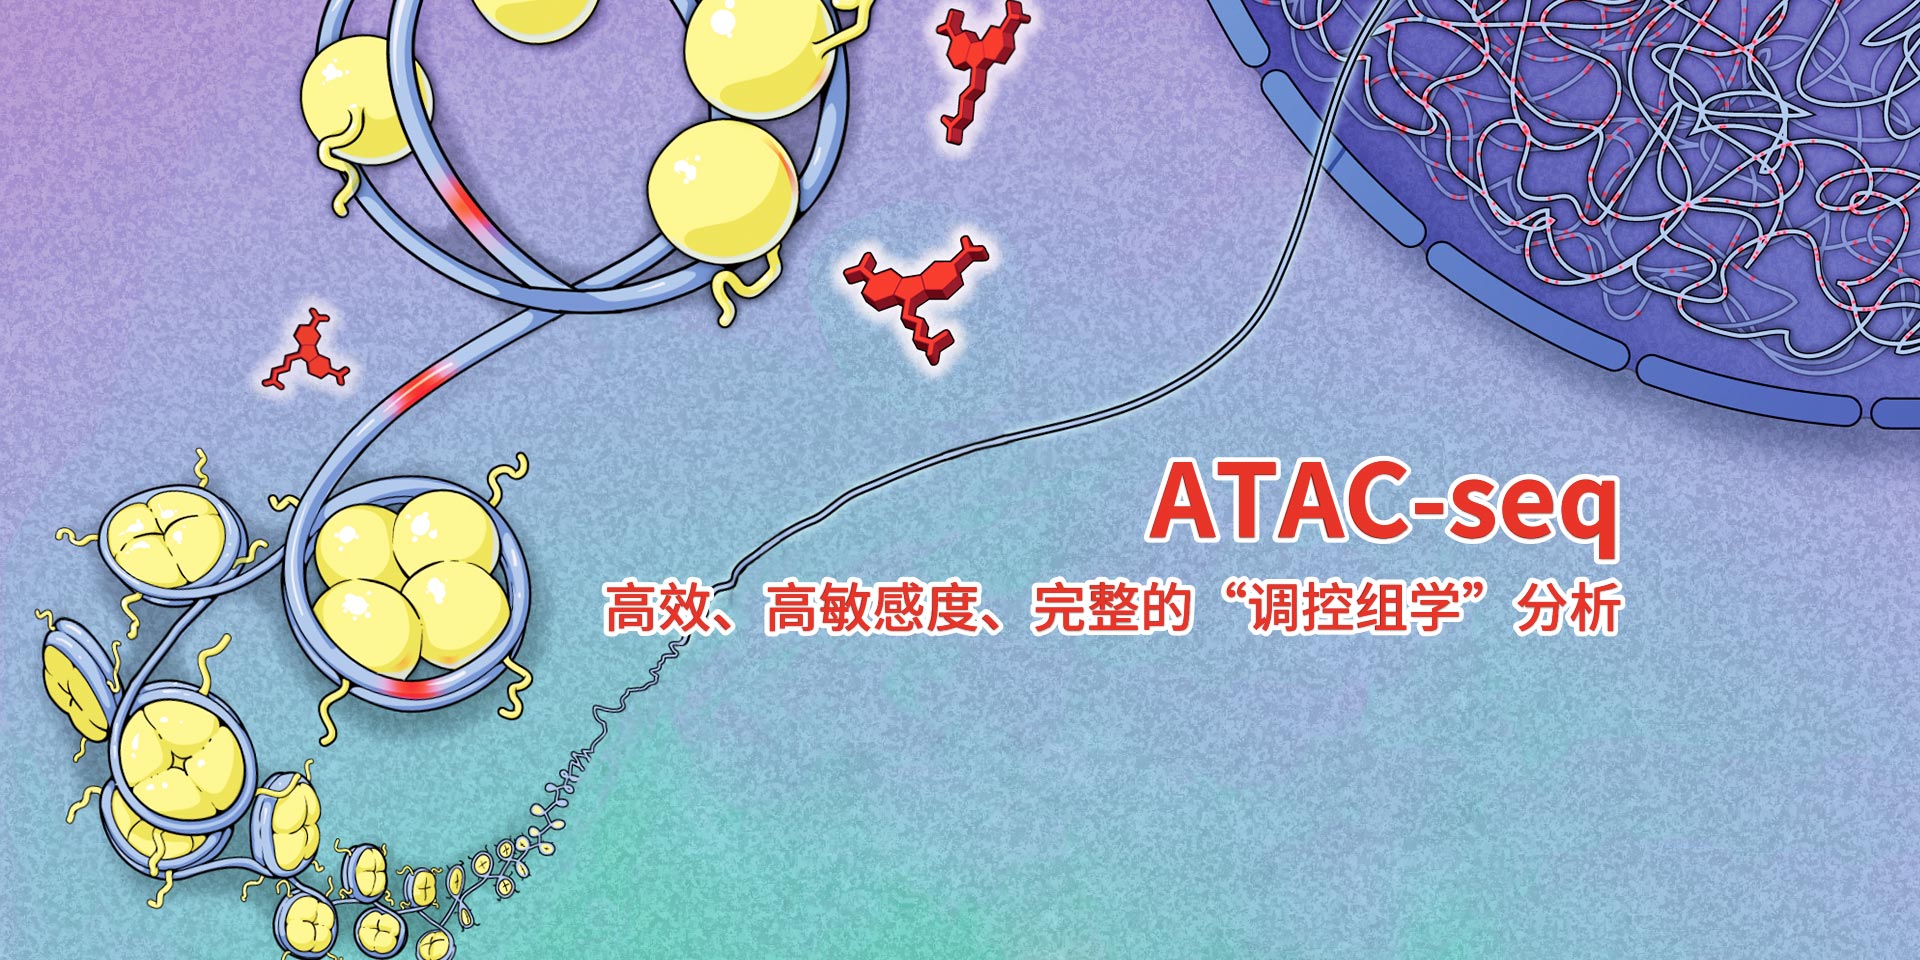 广州表观生物科技有限公司-69-7轮播图